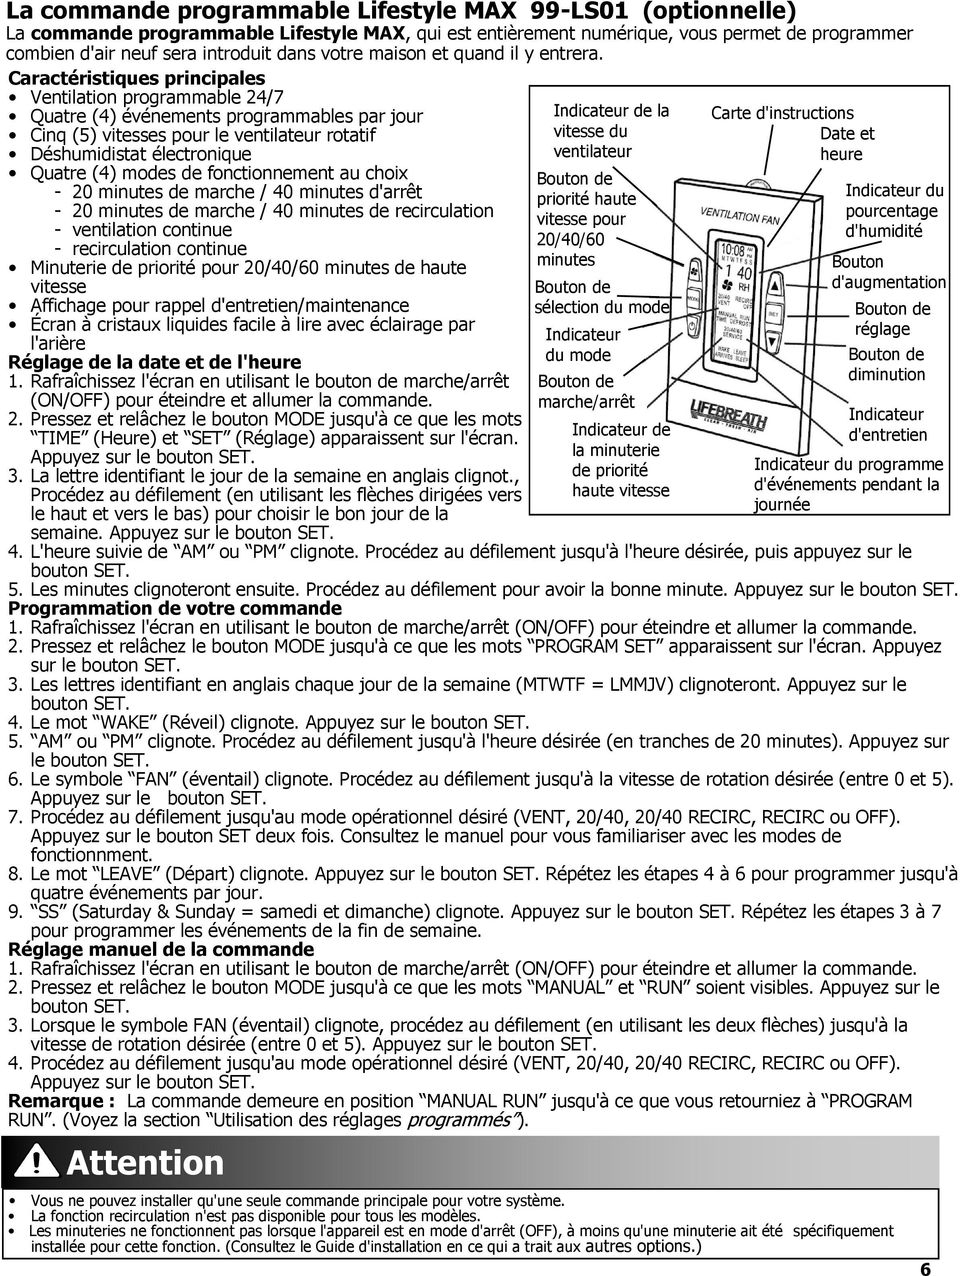 Guide Pour Les Propritaires D Un Appareil De La Srie Max within size 960 X 1276